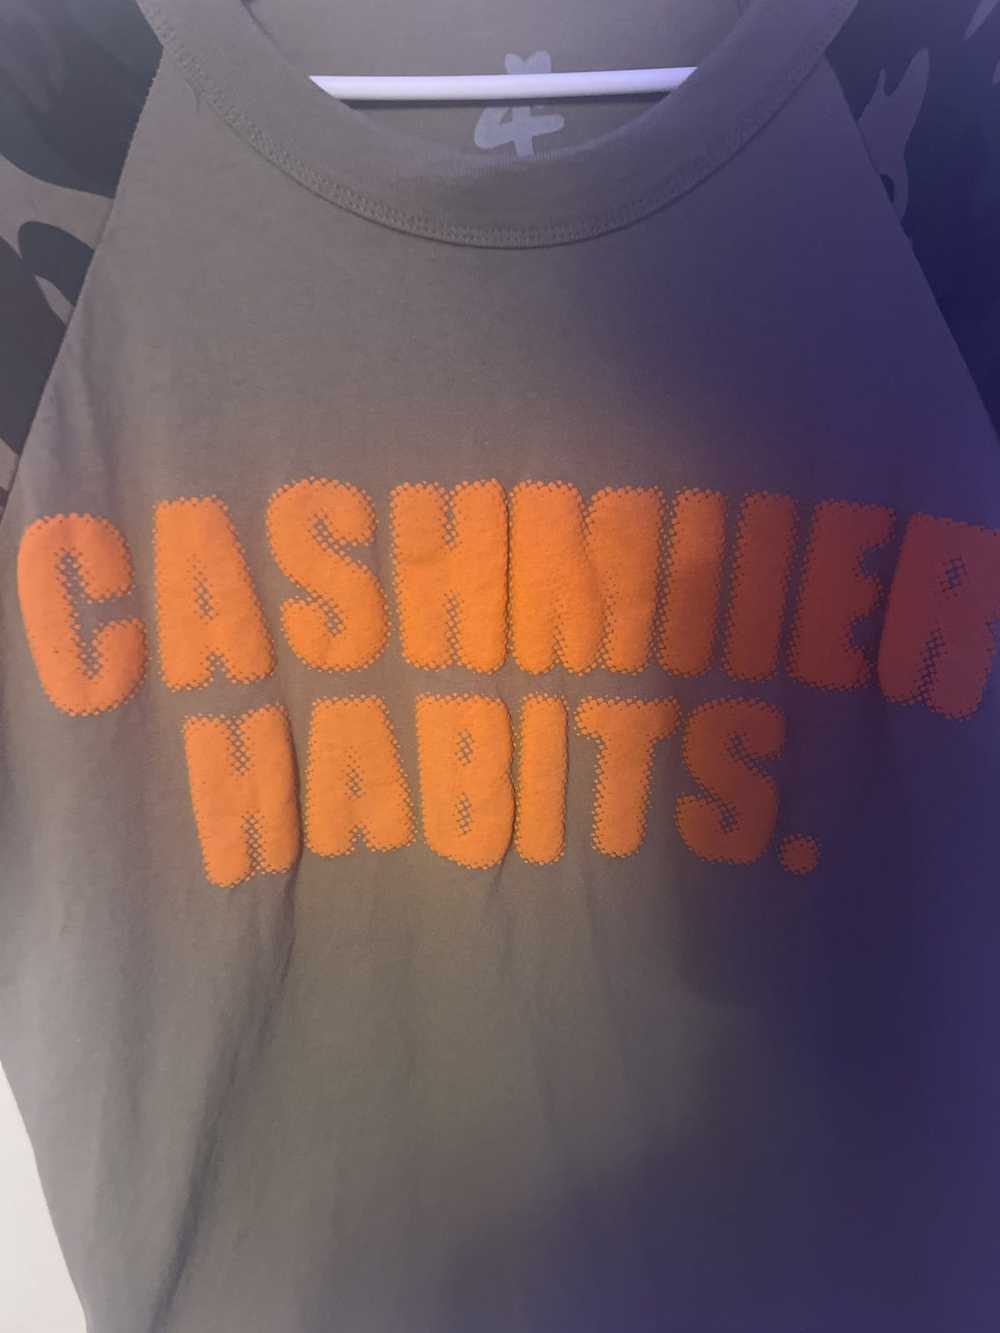 Designer × Other × Streetwear Cashmiier habits co… - image 2